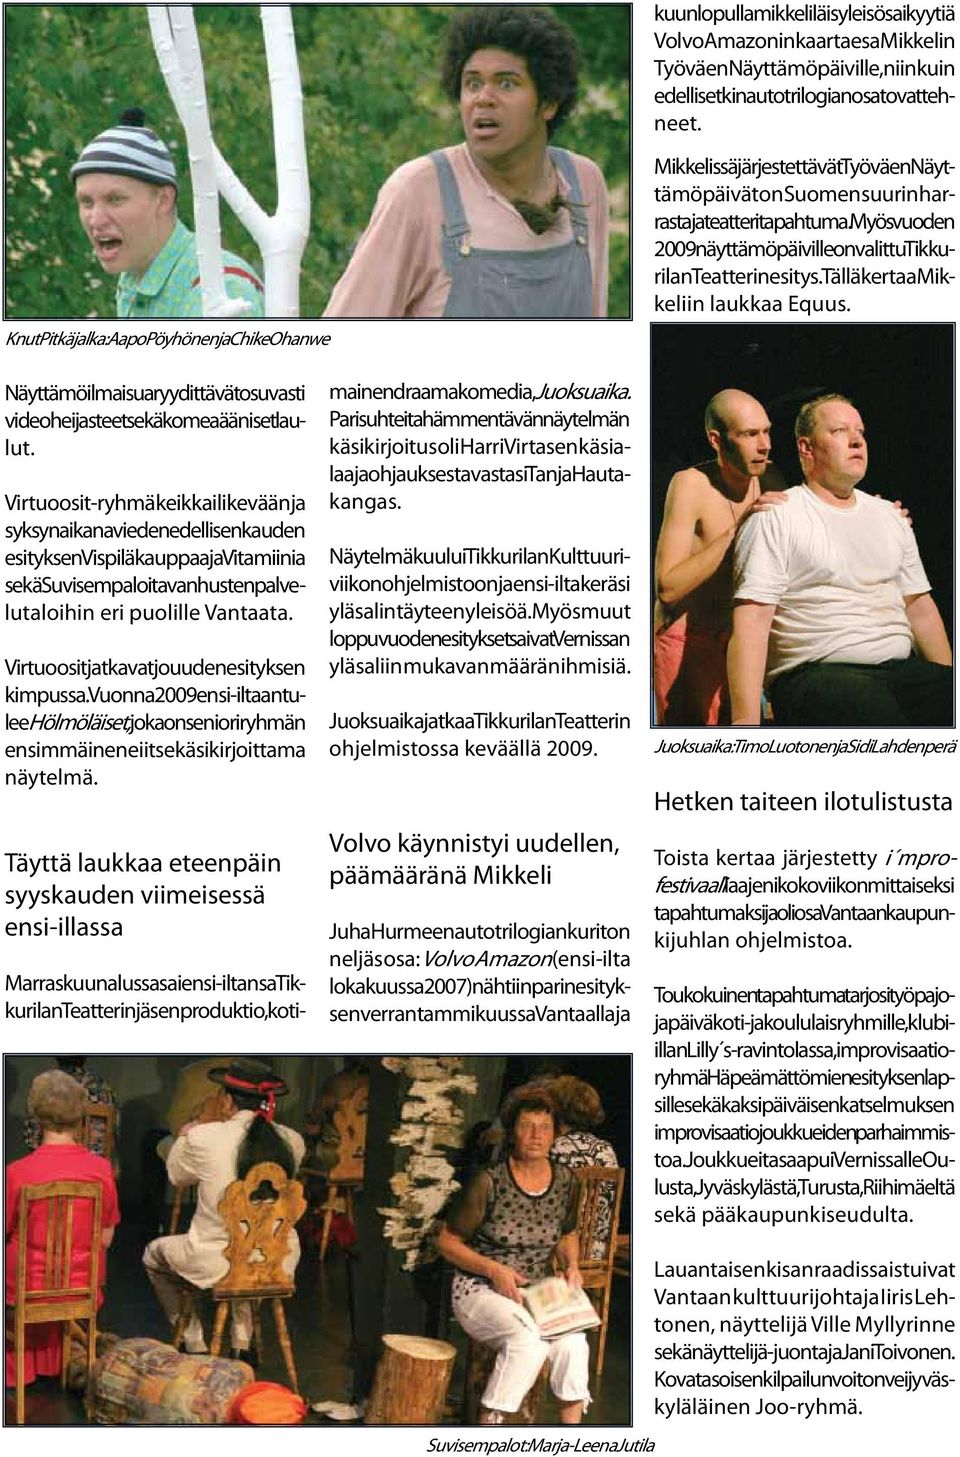 Myös vuoden 2009 näyttämöpäiville on valittu Tikkurilan Teatterin esitys. Tällä kertaa Mikkeliin laukkaa Equus. Näyttämöilmaisua ryydittävät osuvasti videoheijasteet sekä komeaääniset laulut.